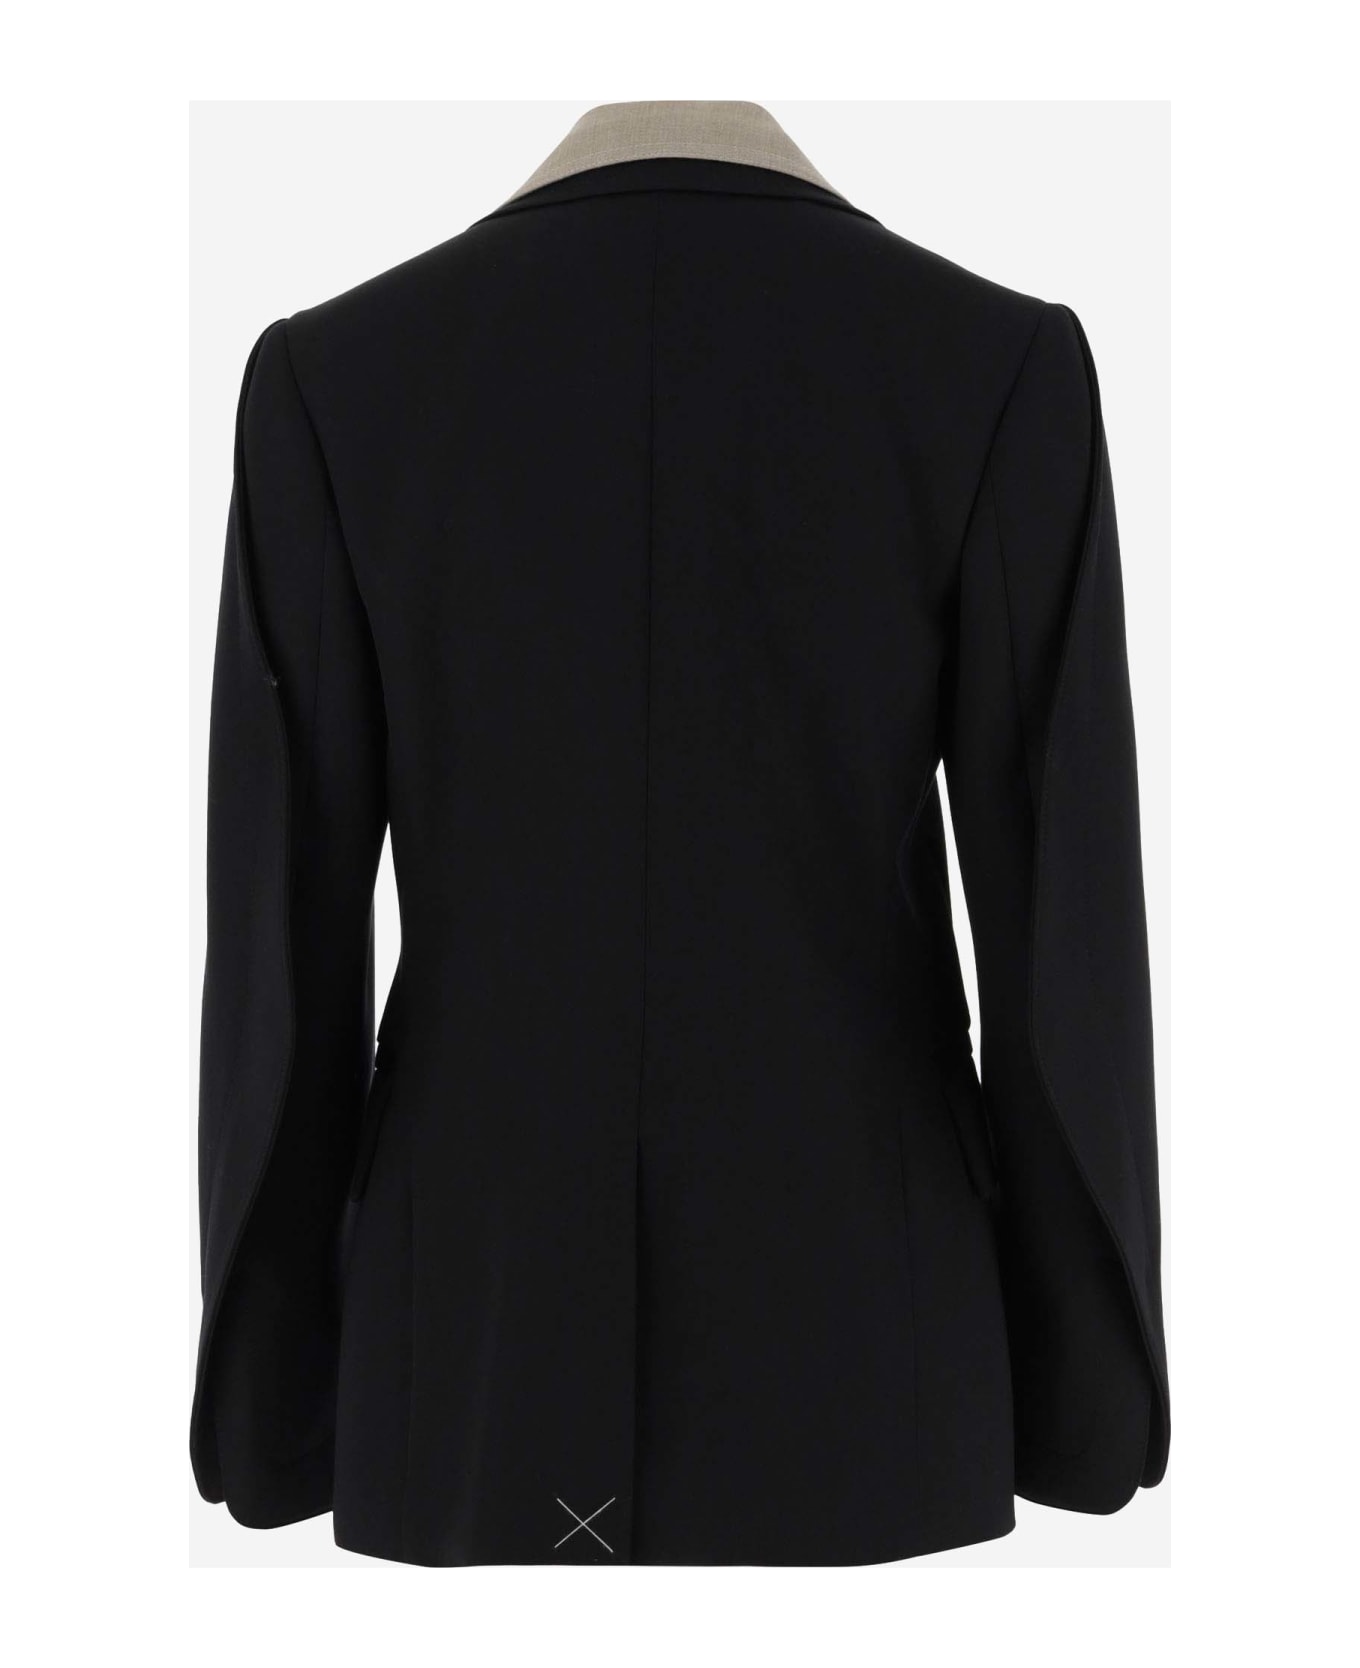 Bottega Veneta Curved Sleeved Jacket - Black